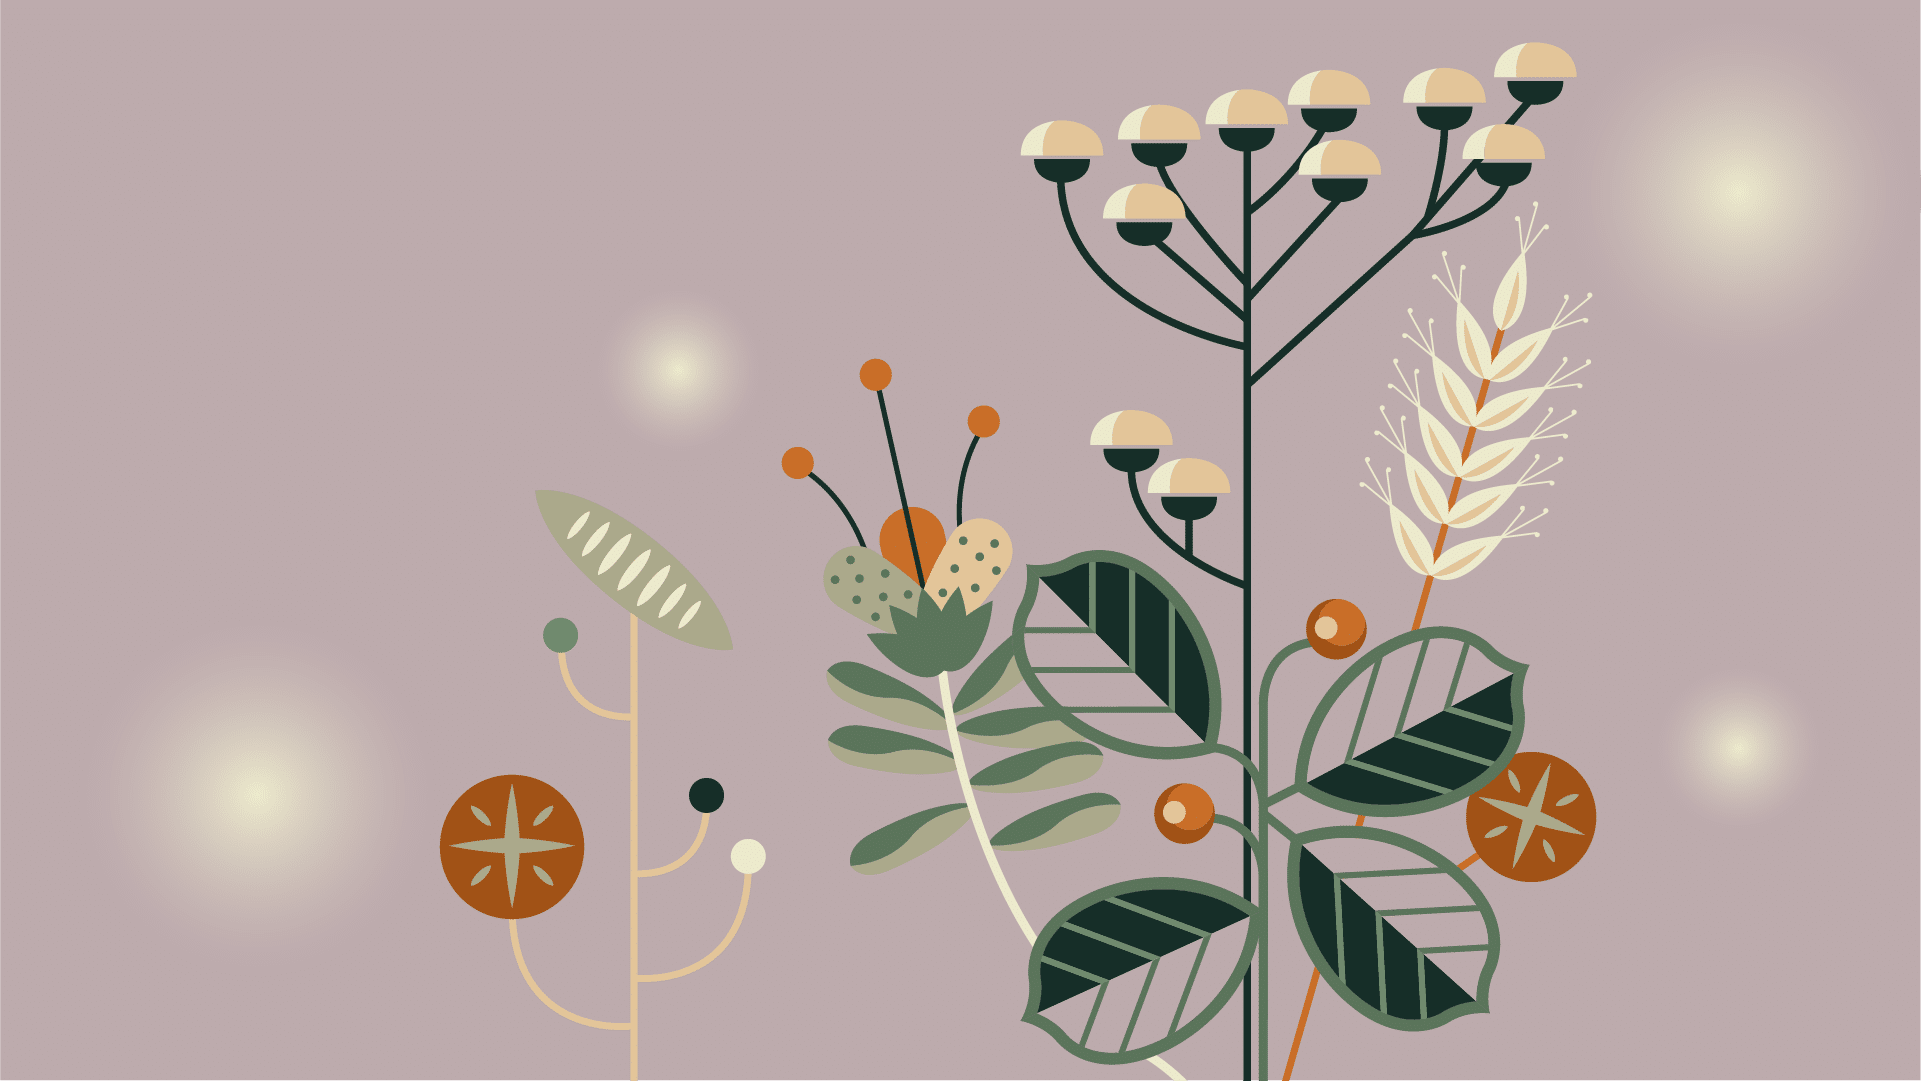 Illustrasjon av blomster og vekster i hvitt, oransje, grønt og brunt.